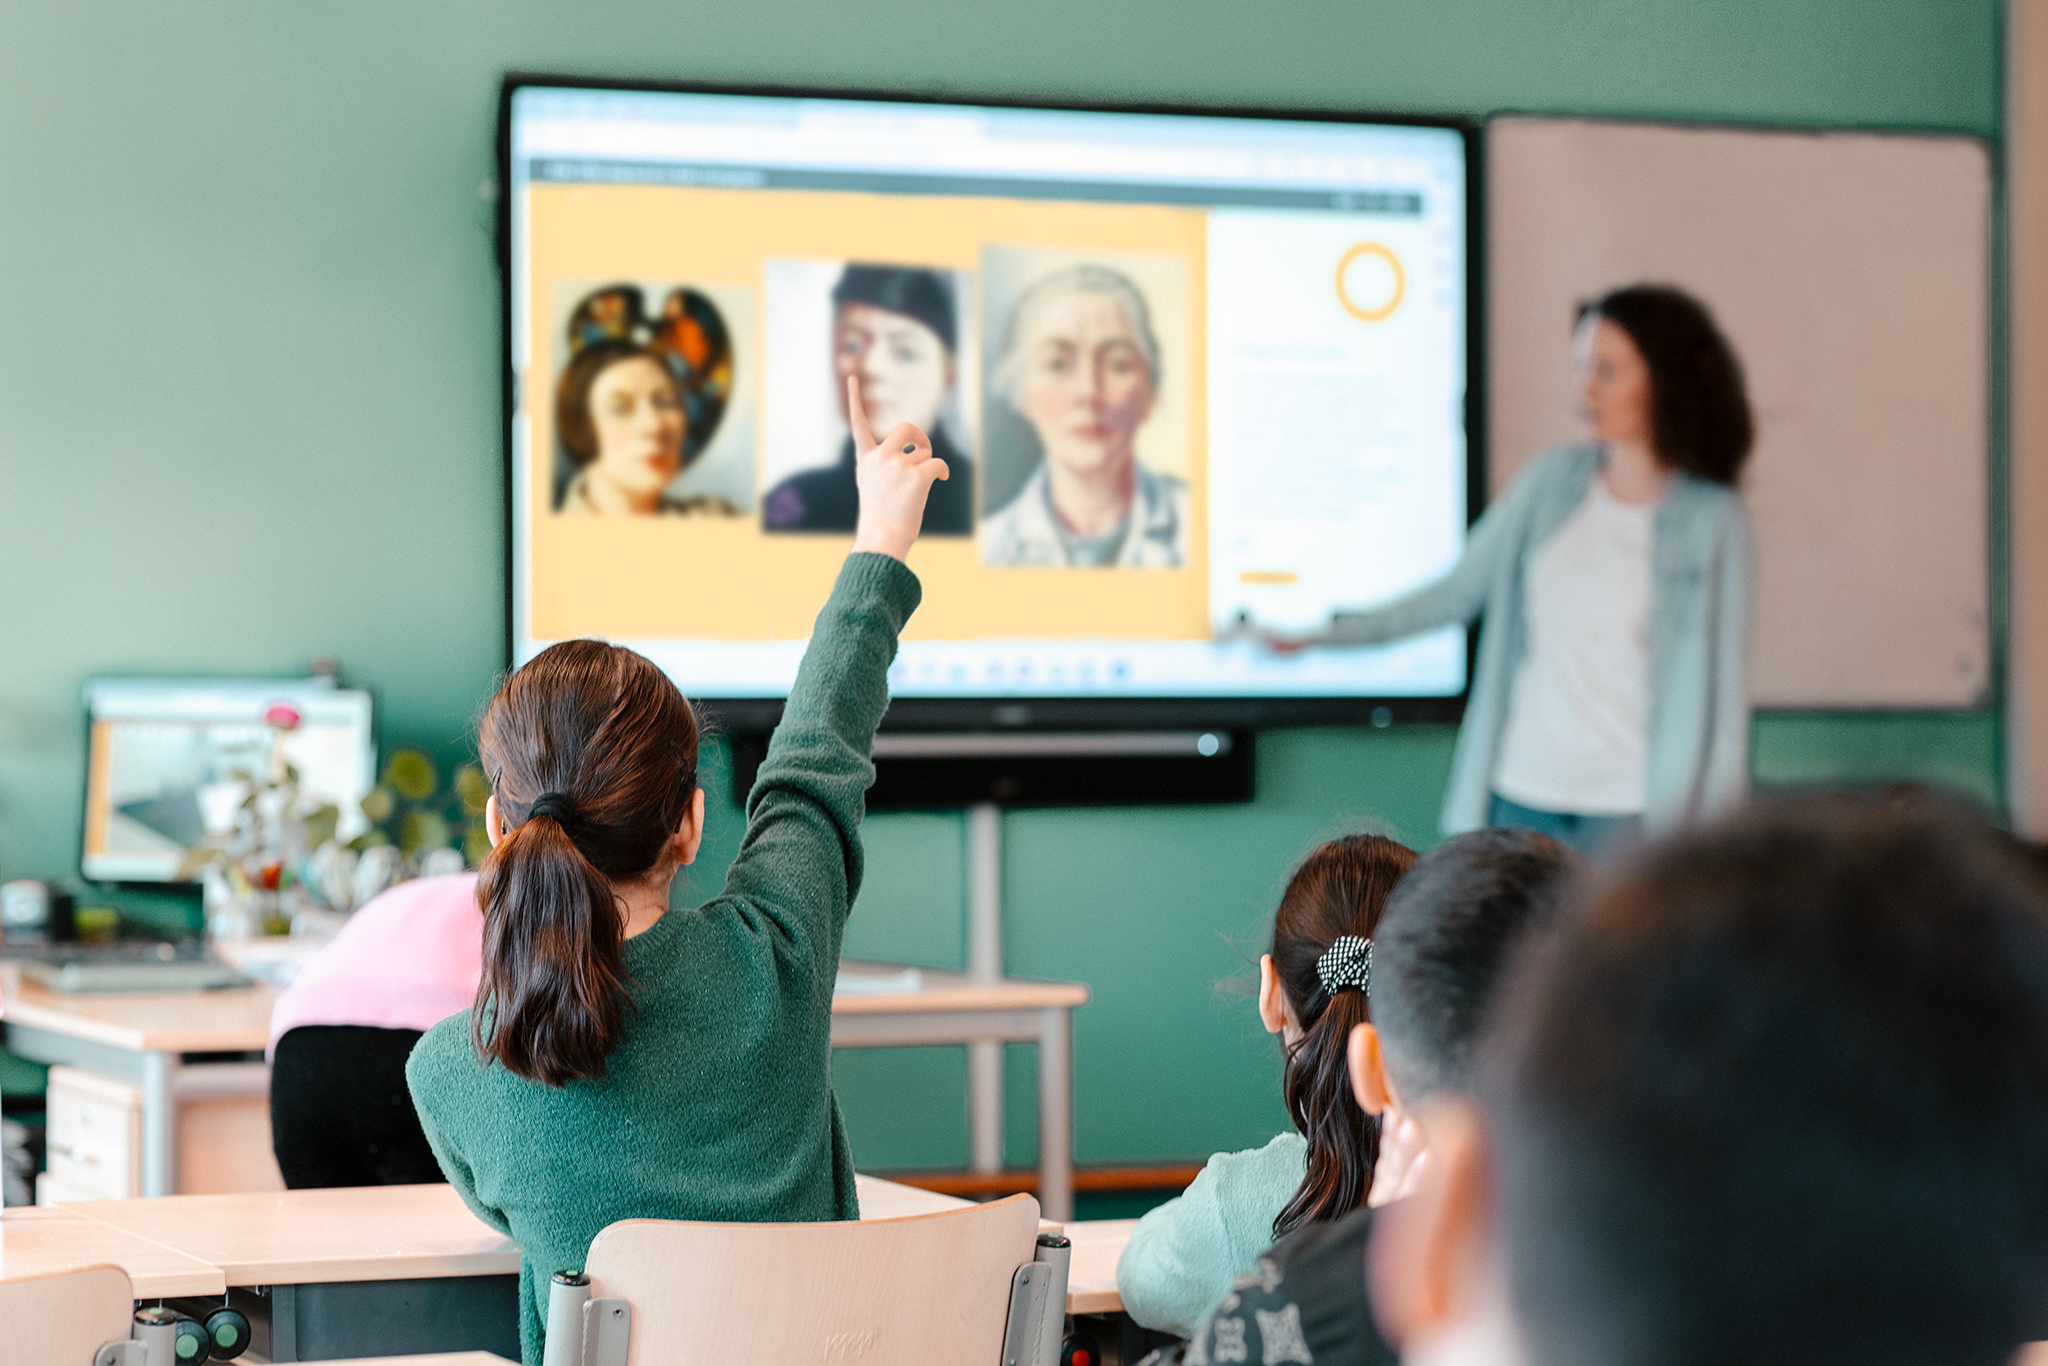 leerkracht bij smartboard, op de voorgrond kind met hand omhoog gestoken